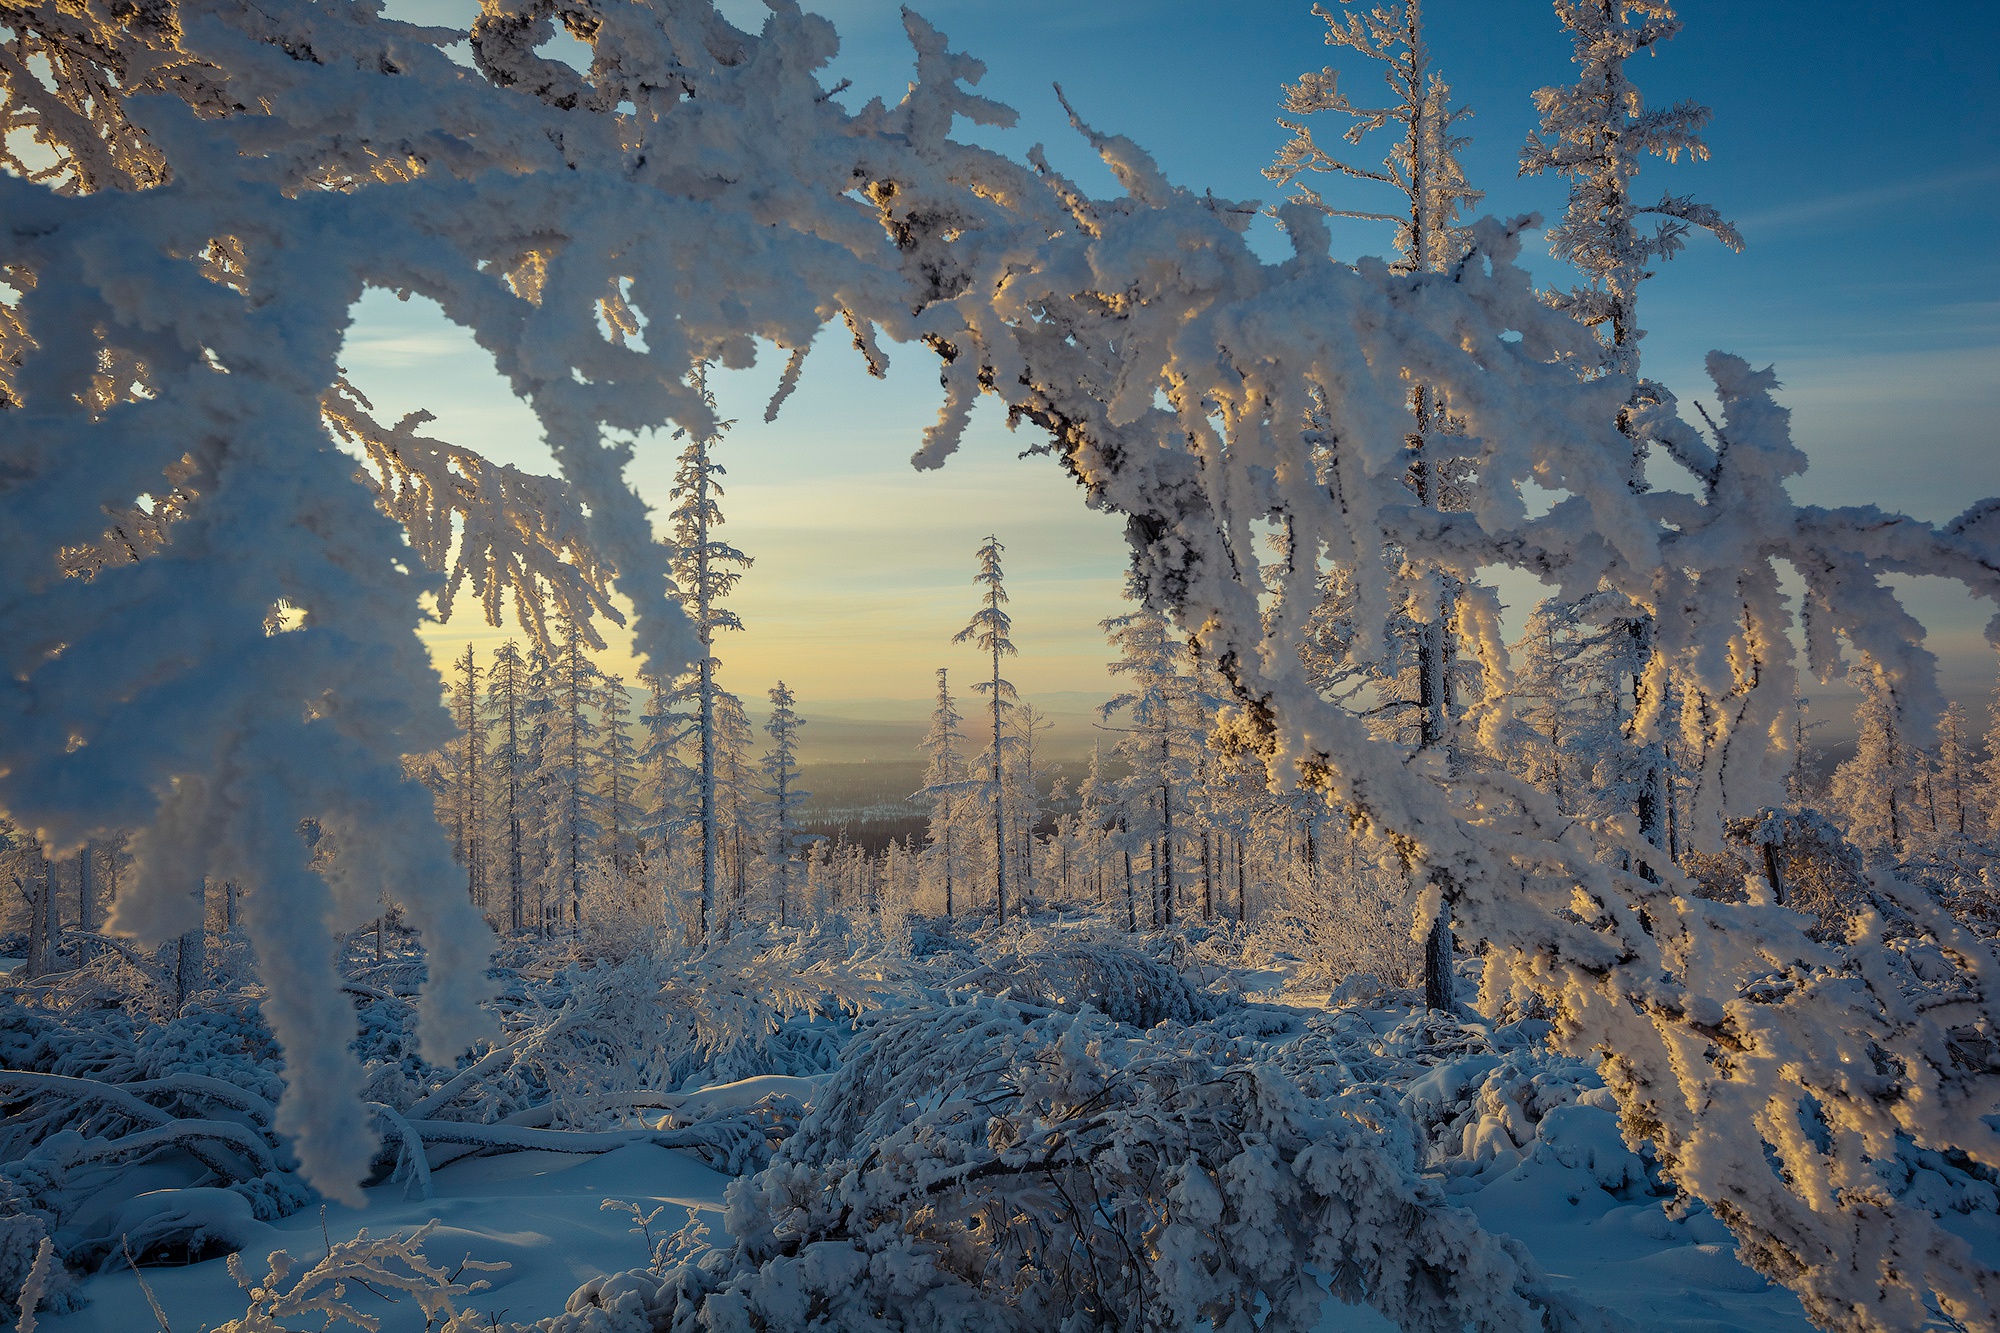 Скачать обои бесплатно Зима, Природа, Снег, Дерево, Ландшафт, Земля/природа картинка на рабочий стол ПК